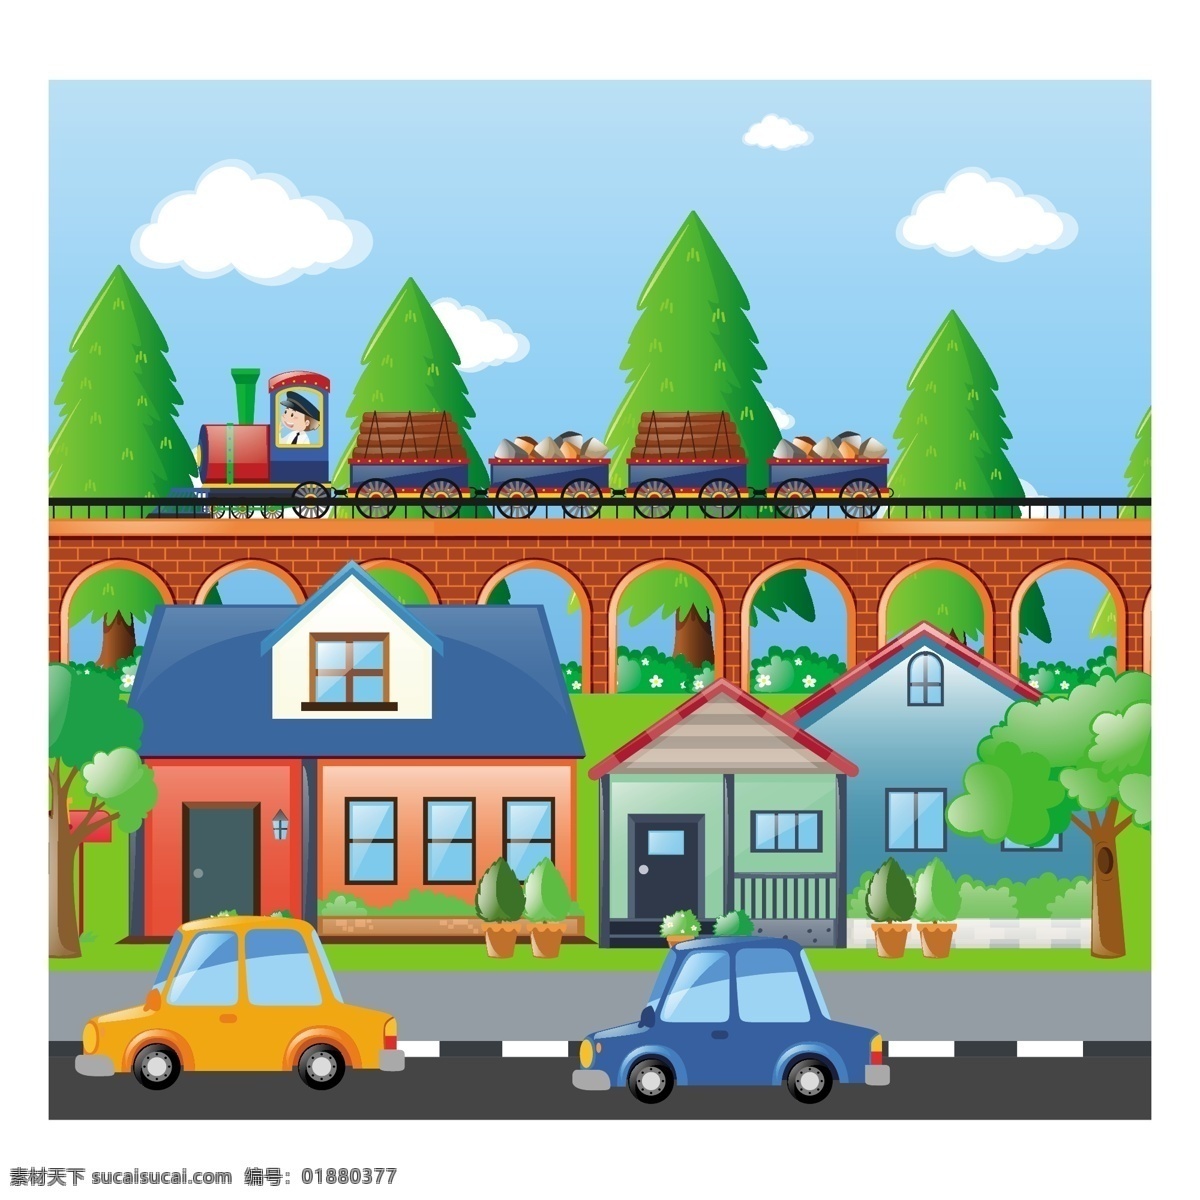 城市背景设计 背景 汽车 城市 房子 建筑 壁纸 颜色 火车 多彩的背景 建筑物 城市建筑 背景色 彩色